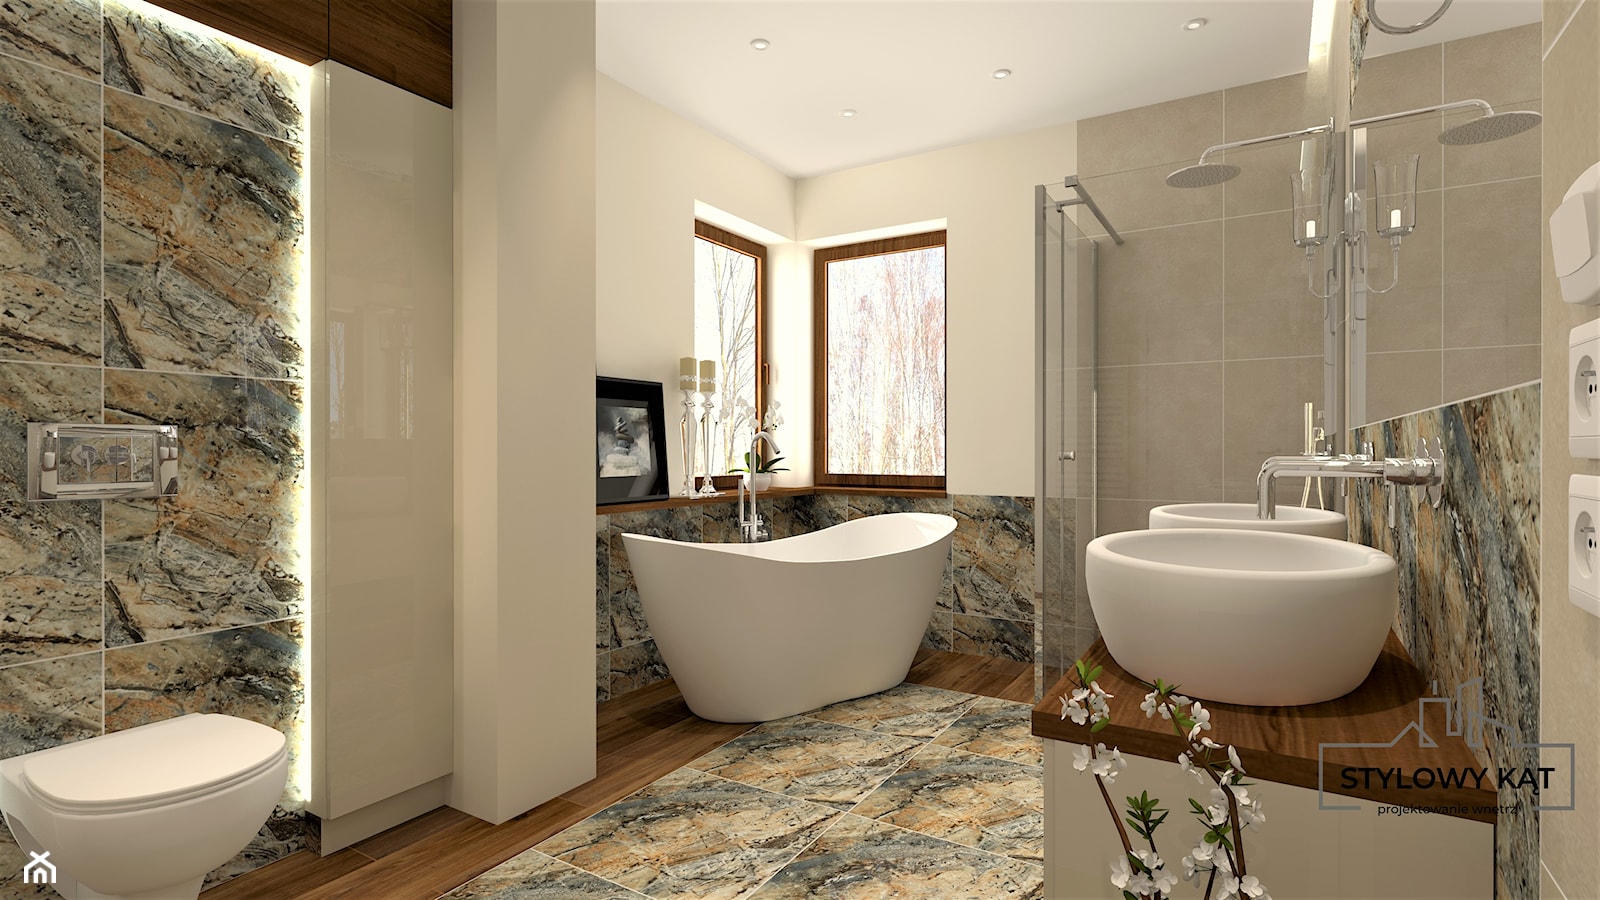 Średnia bez okna z lustrem z dwoma umywalkami z punktowym oświetleniem łazienka - zdjęcie od Stylowy Kąt - Homebook